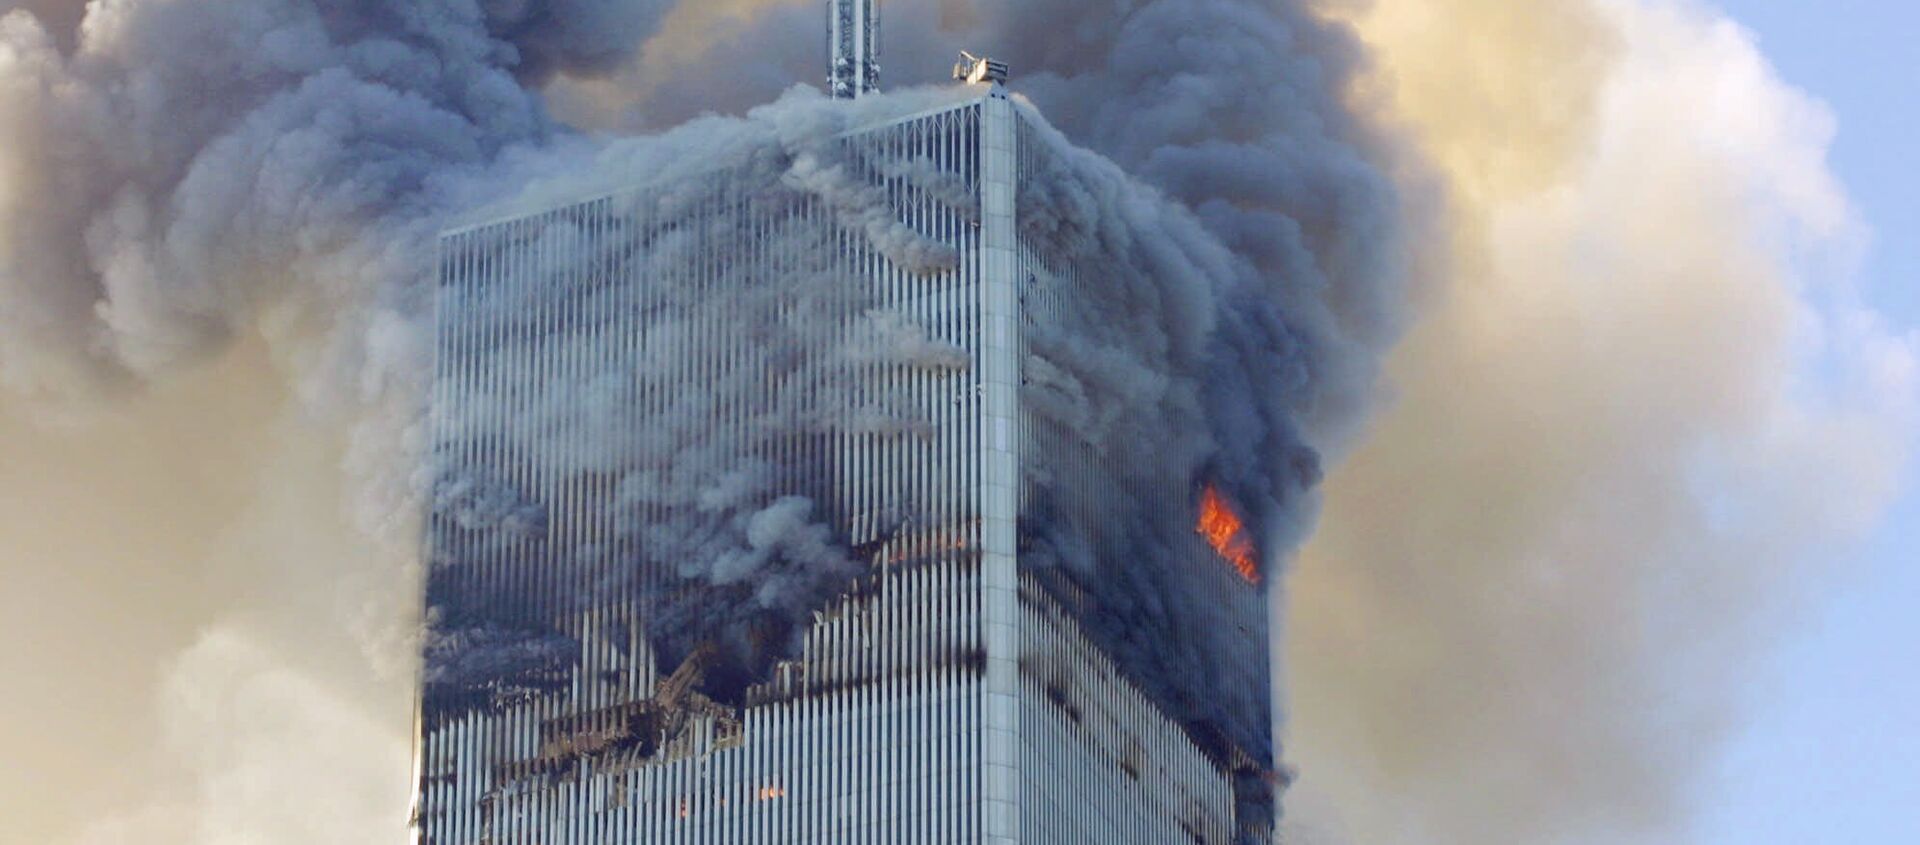 Teroristički napad na Njujork 11. septembra 2001. - Sputnik Srbija, 1920, 24.11.2018